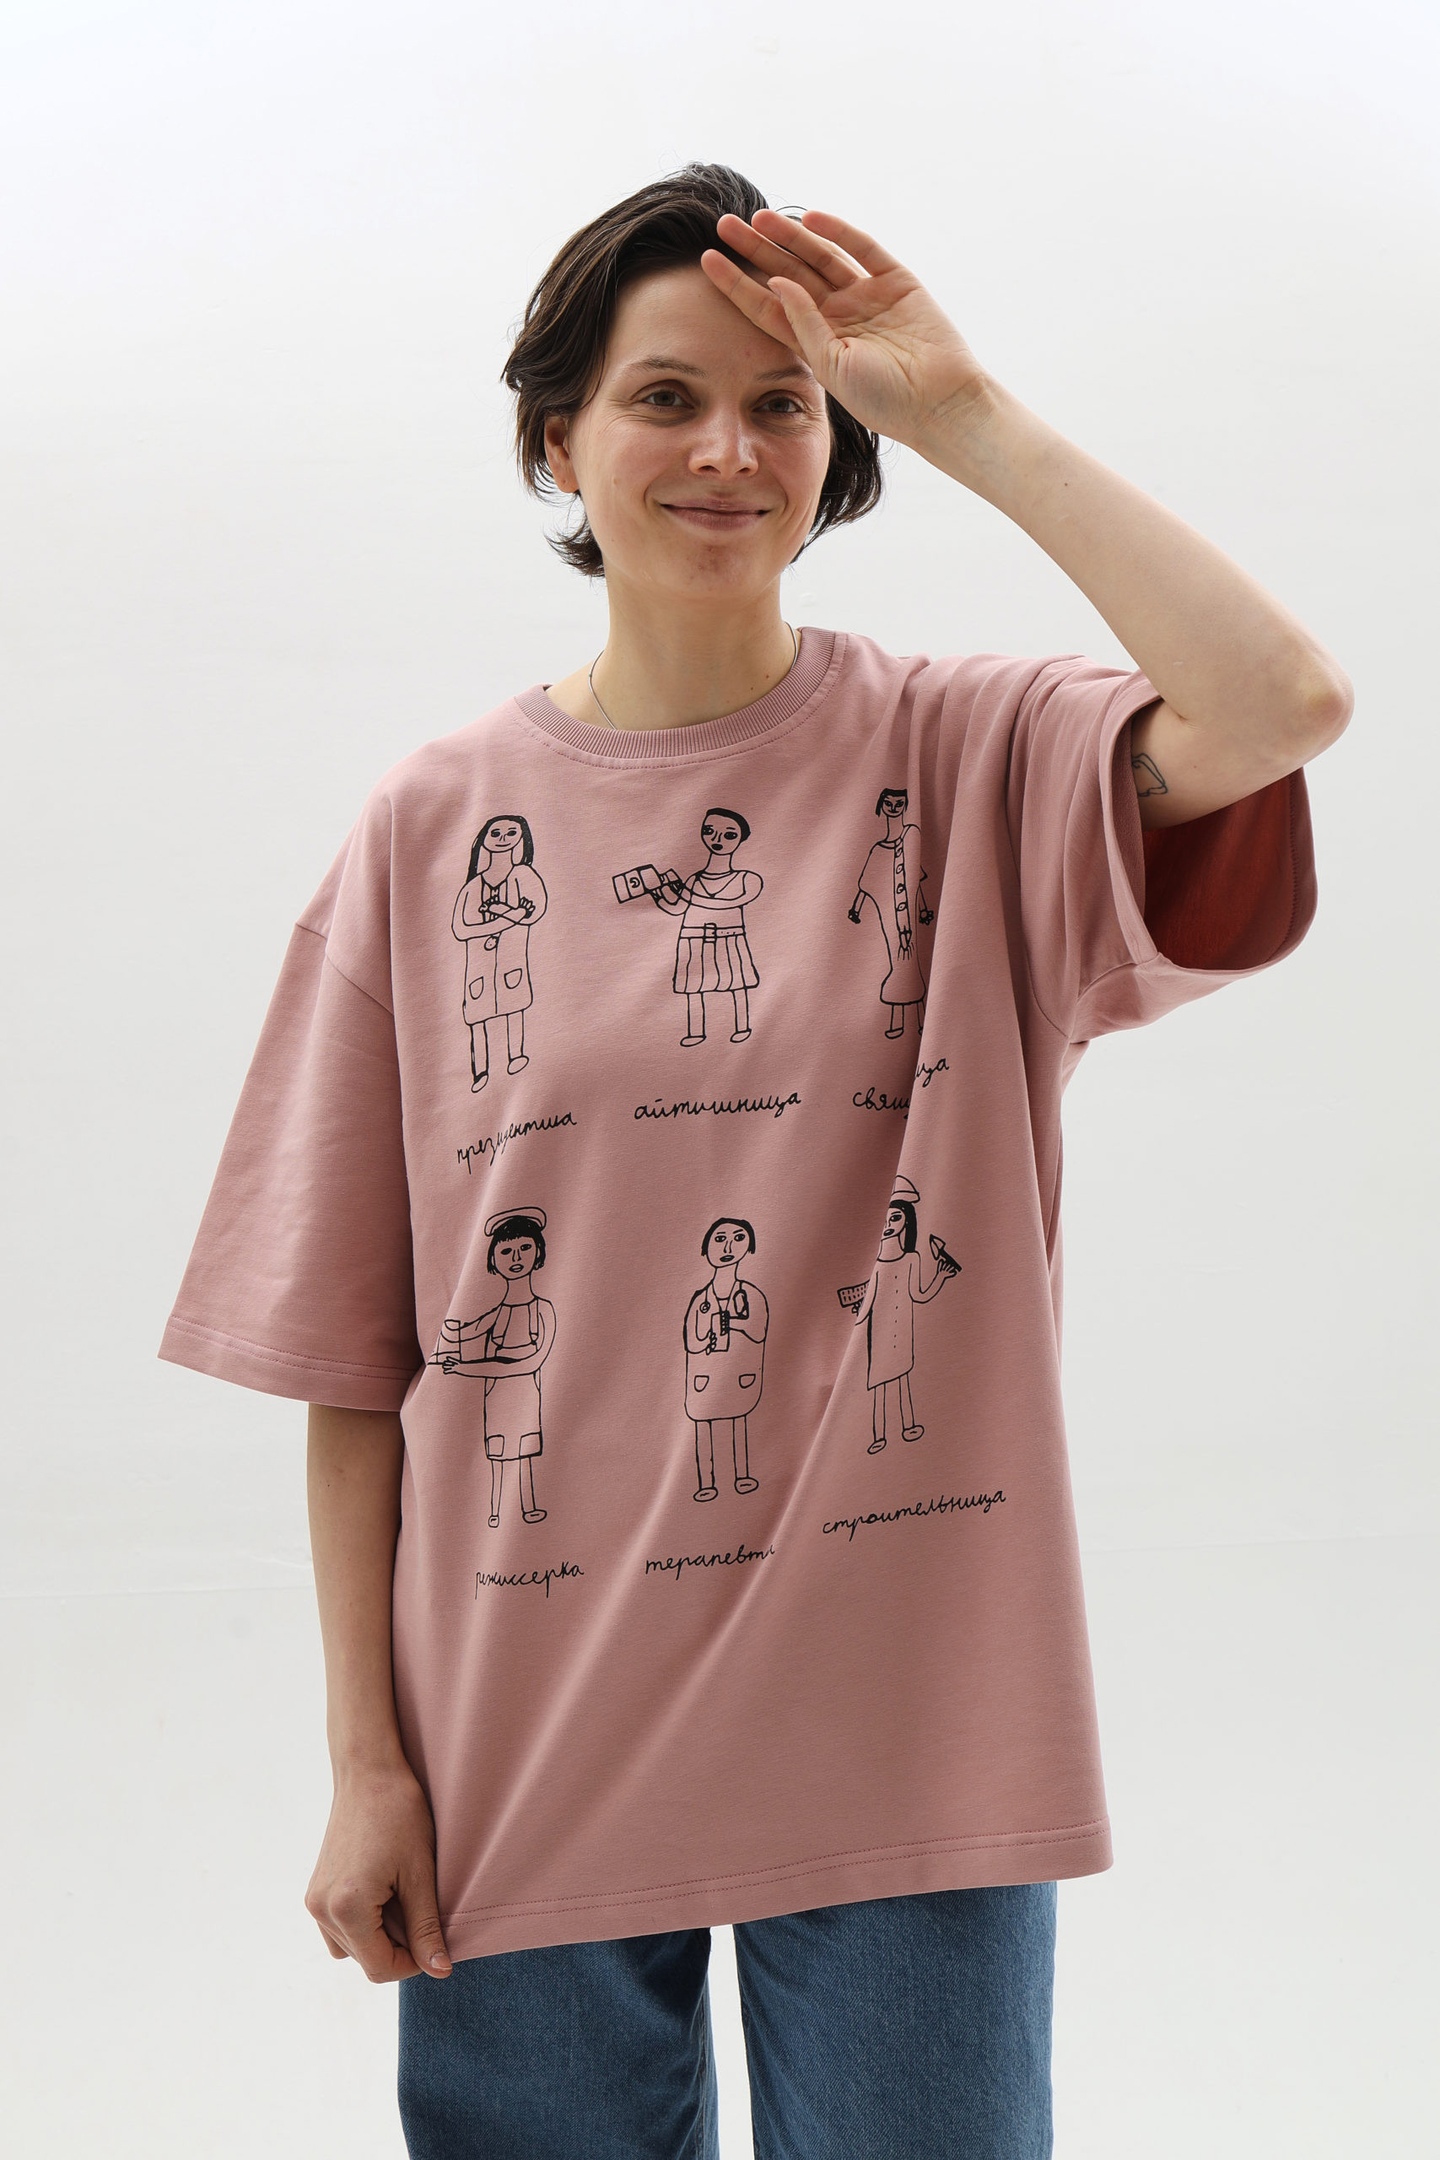 Инклюзивные мастерские «Простые вещи» выпустили коллекцию одежды на тему женских прав (фото 1)